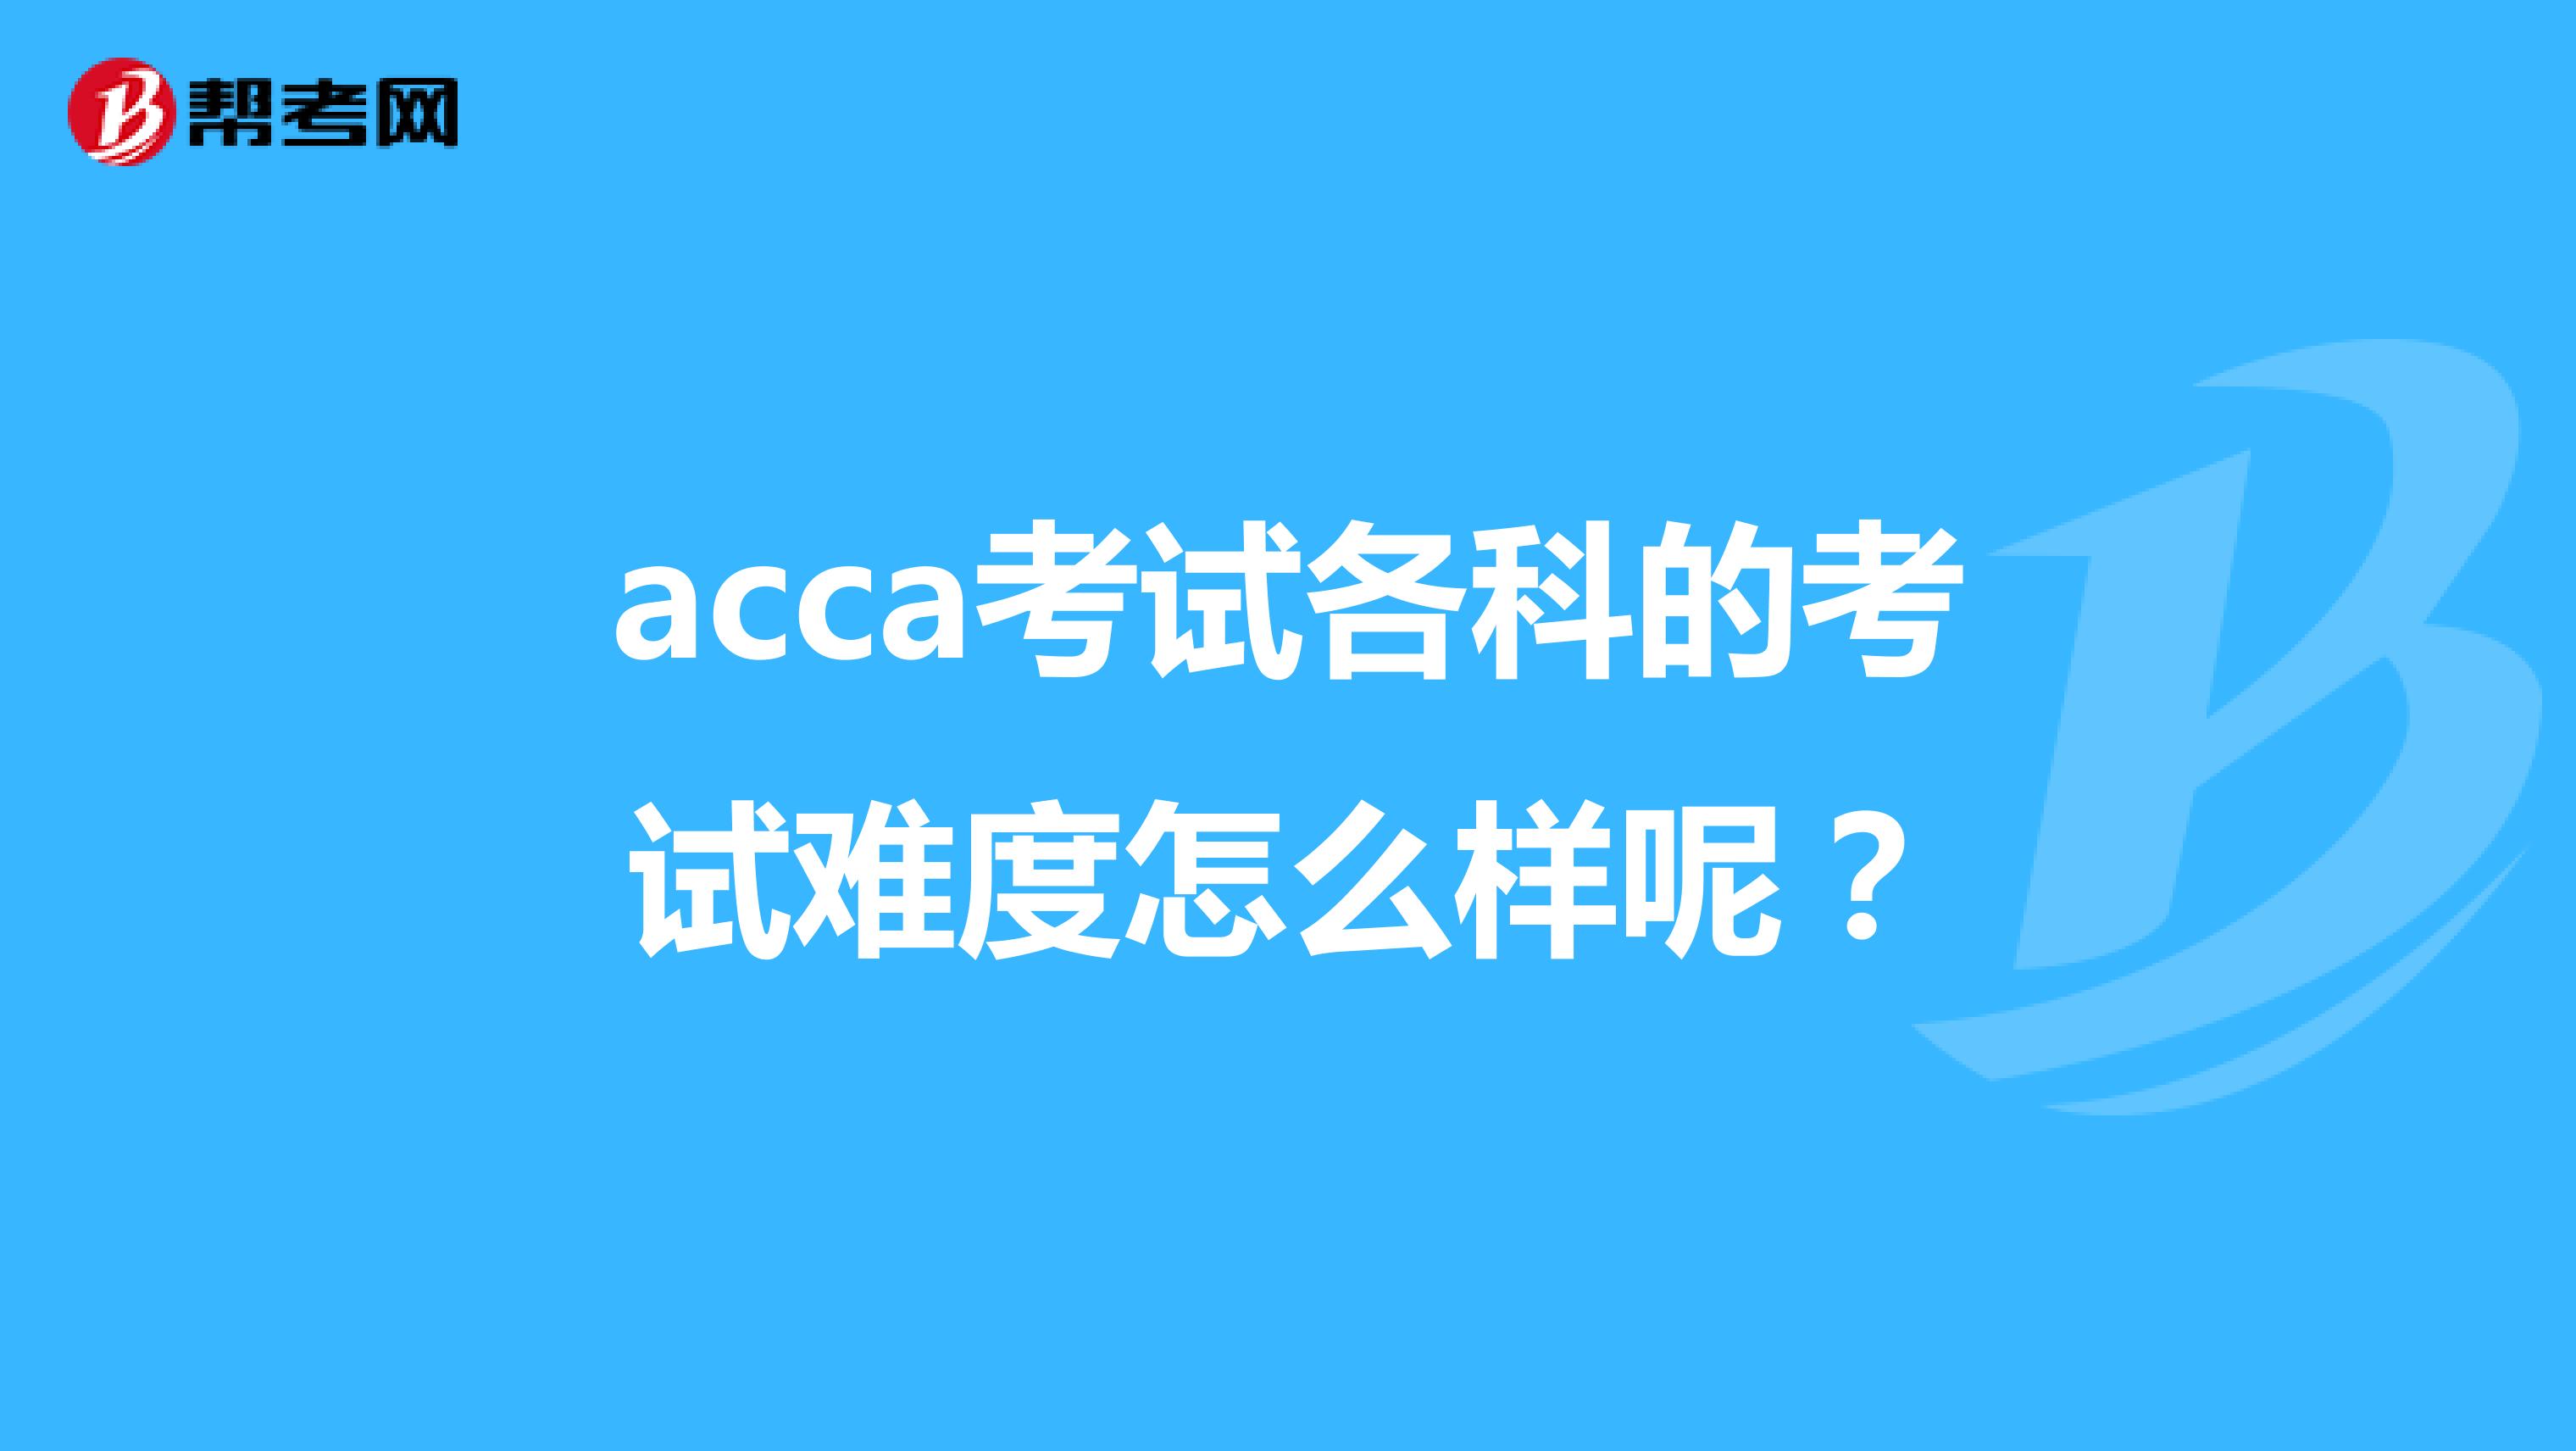 acca考试各科的考试难度怎么样呢？